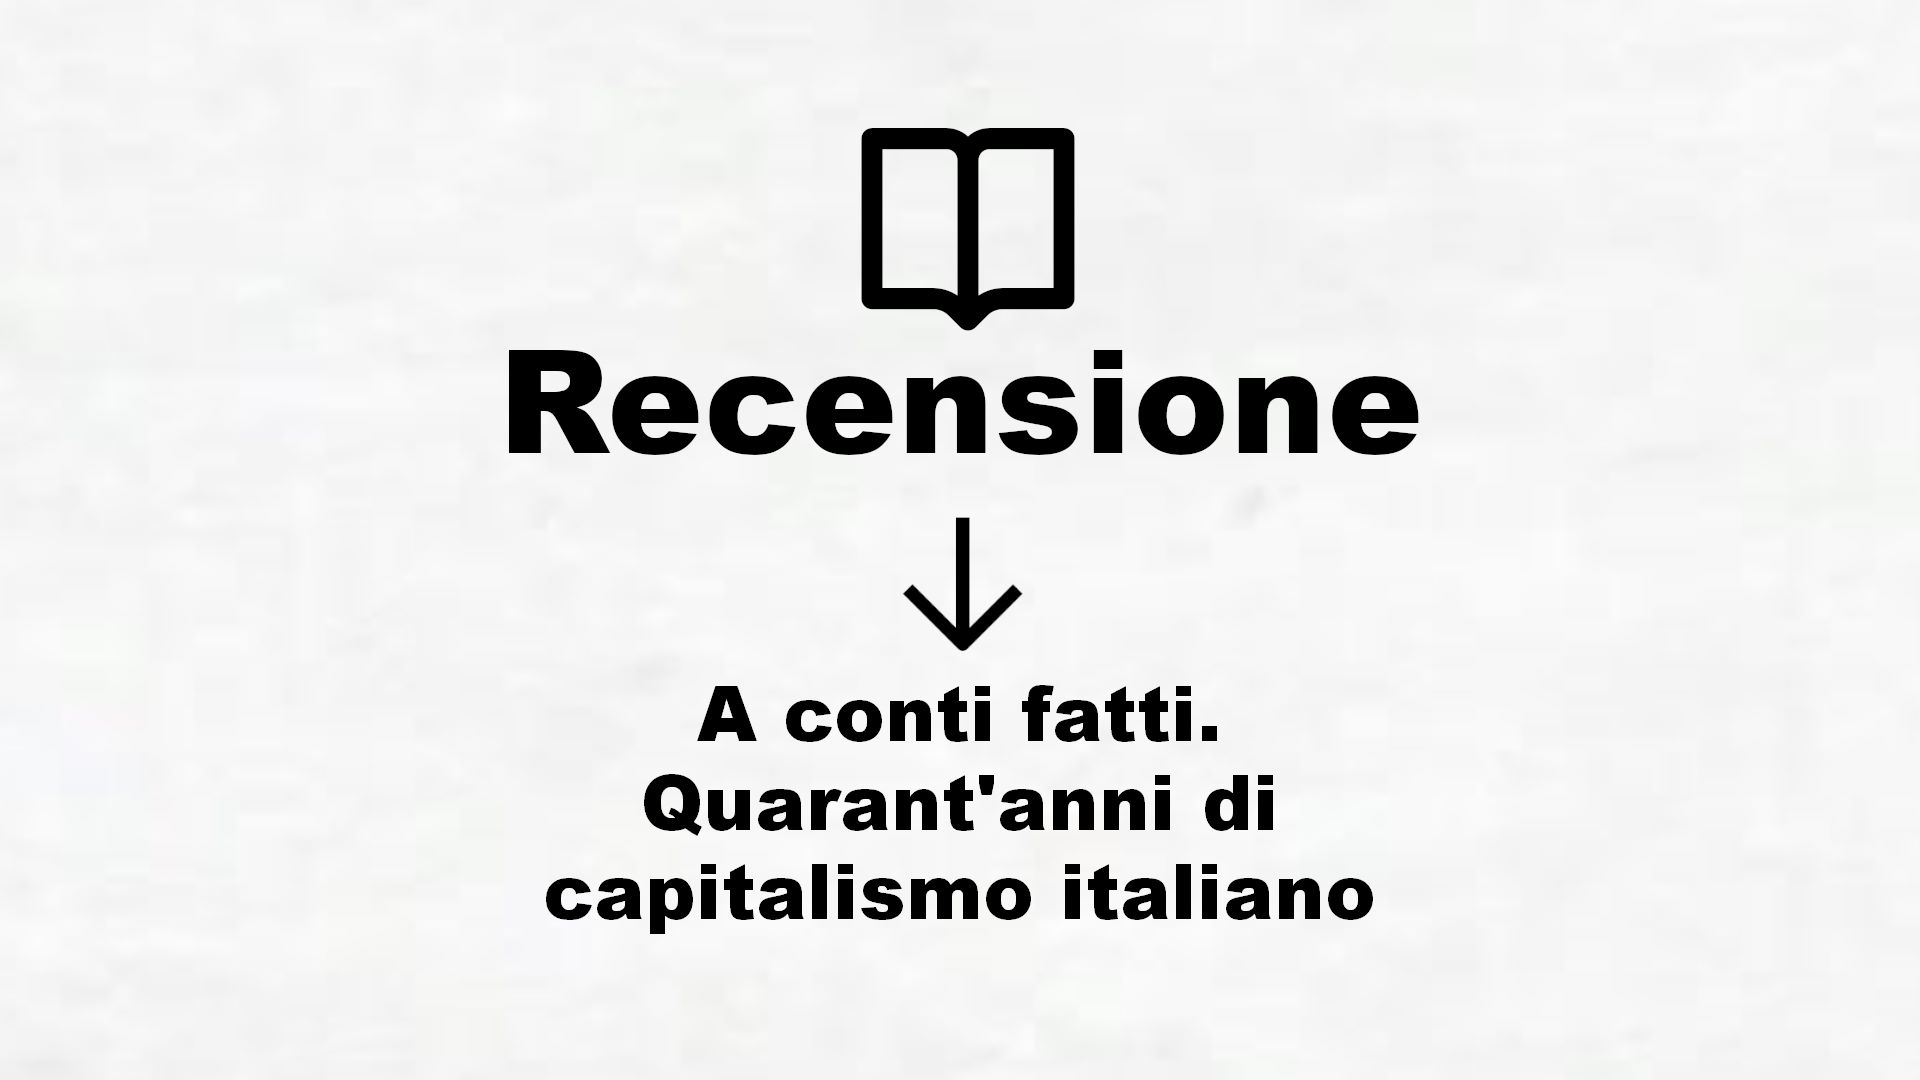 A conti fatti. Quarant’anni di capitalismo italiano – Recensione Libro